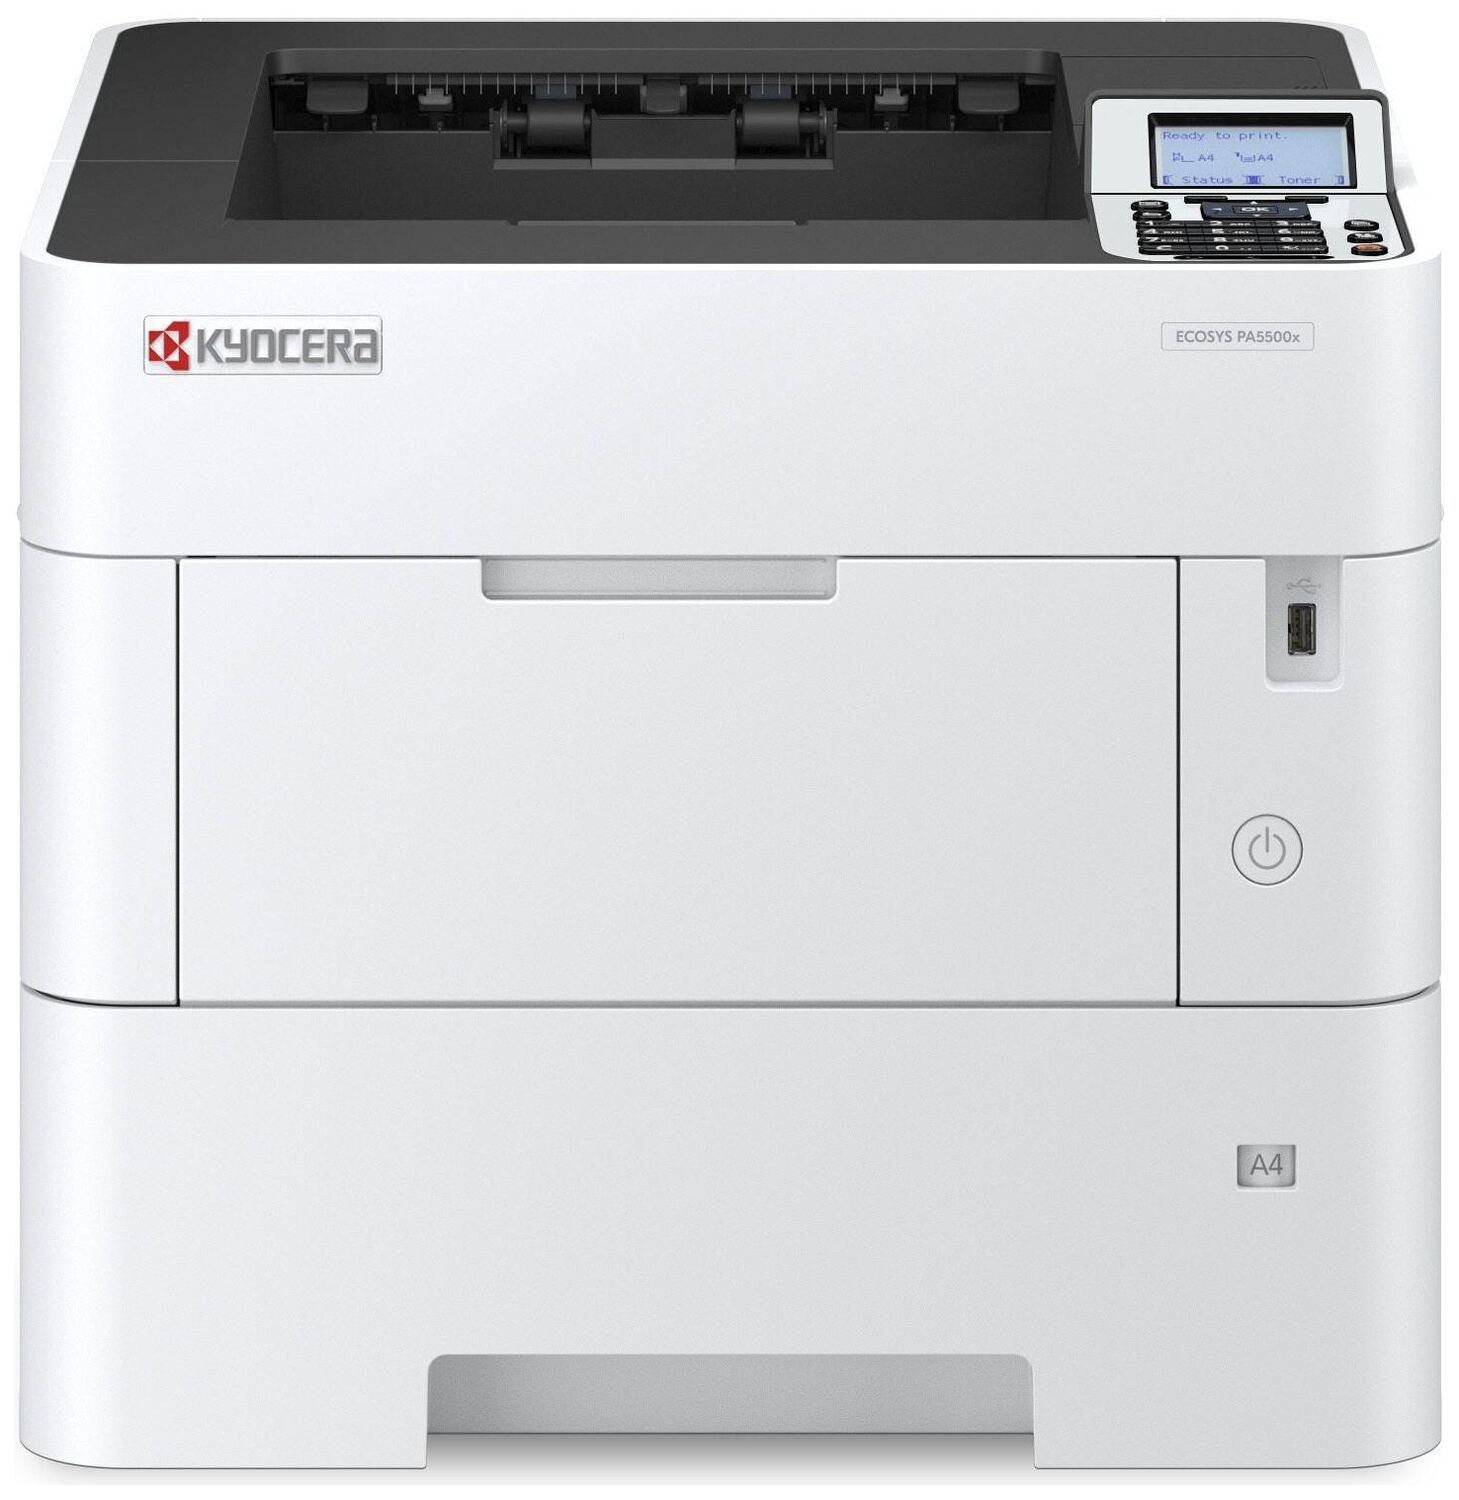 Принтер Kyocera Kyocera ECOSYS PA5000x 110C0W3NL0/A4 черно-белый/печать Лазерный 1200x1200dpi 55стр.мин/ Сетевой интерфе